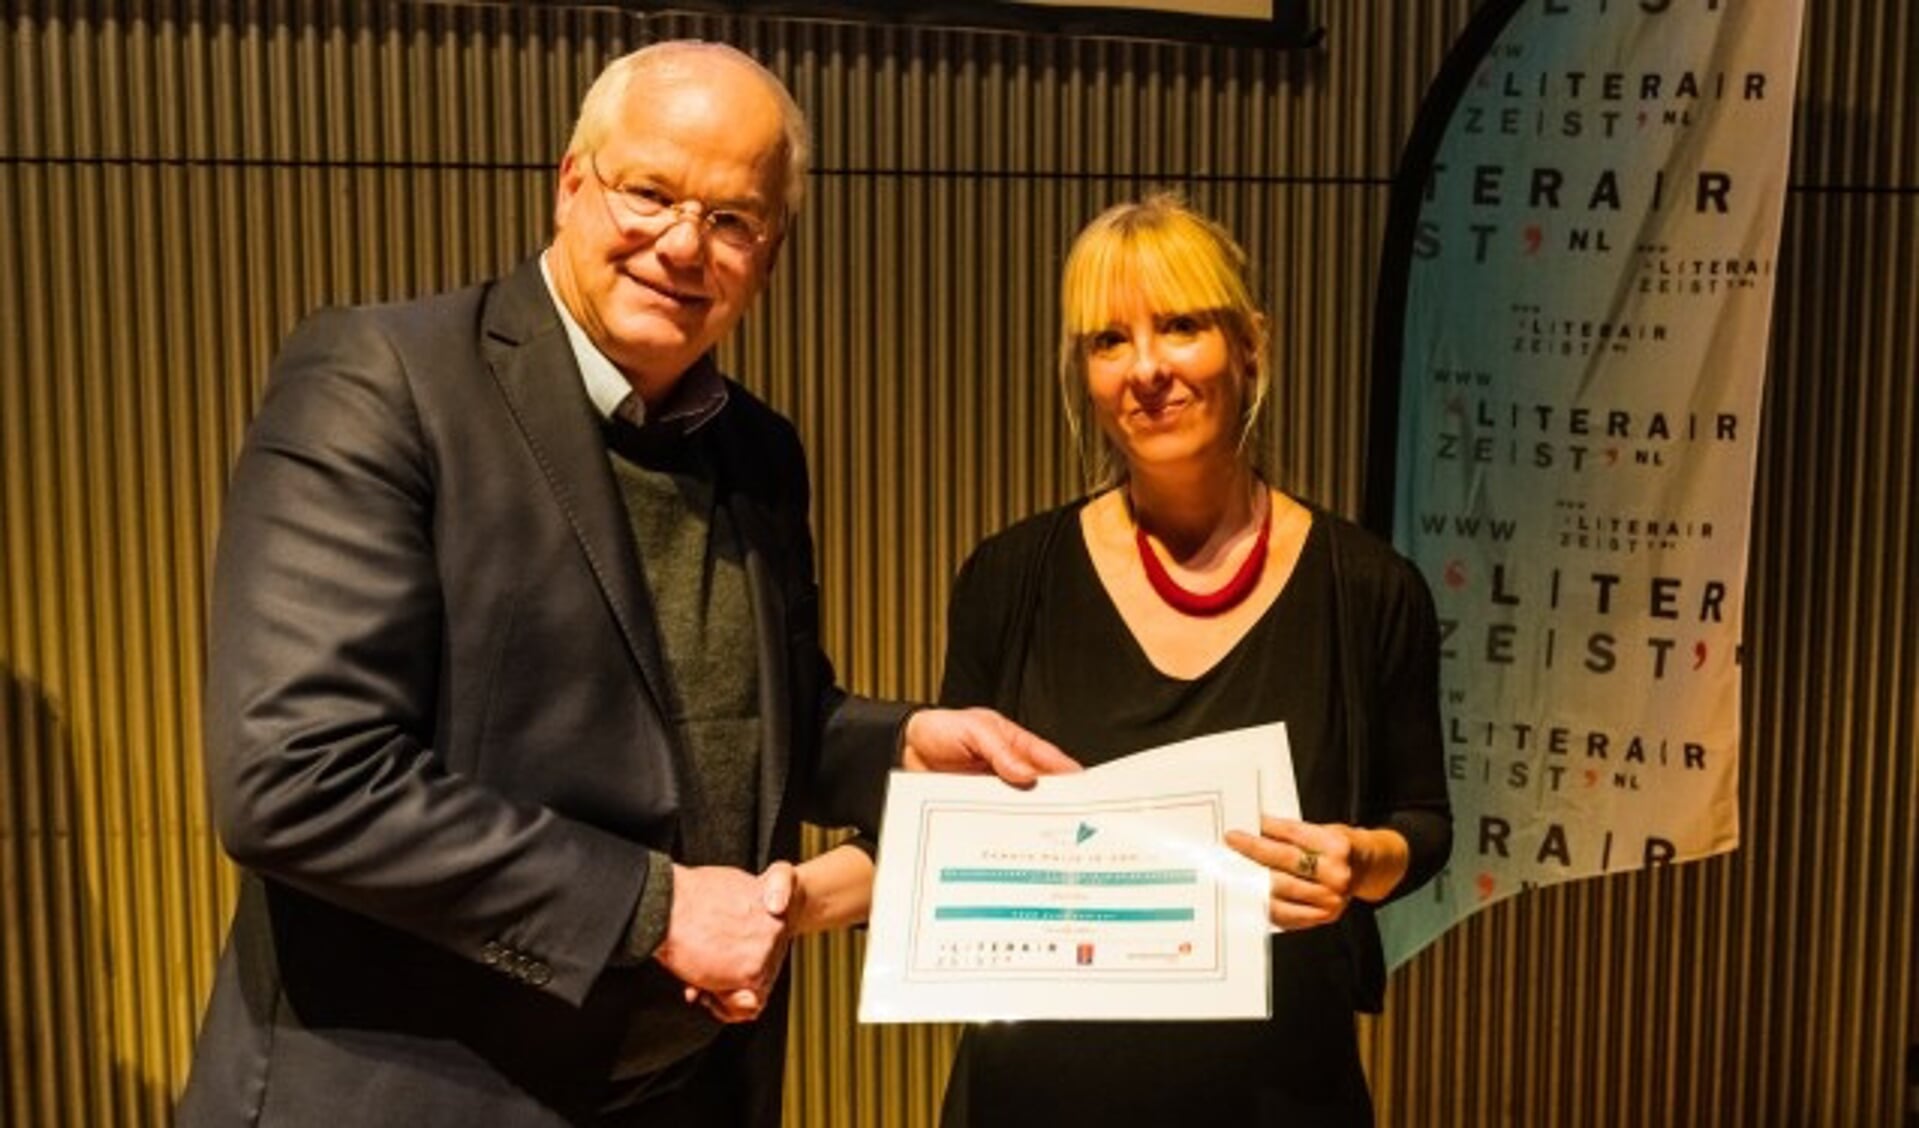 Jan Arns ontvangt de LiteratuurPrijs Zeist uit handen van wethouder Mel Boas op 23 november in De Klinker in Zeist